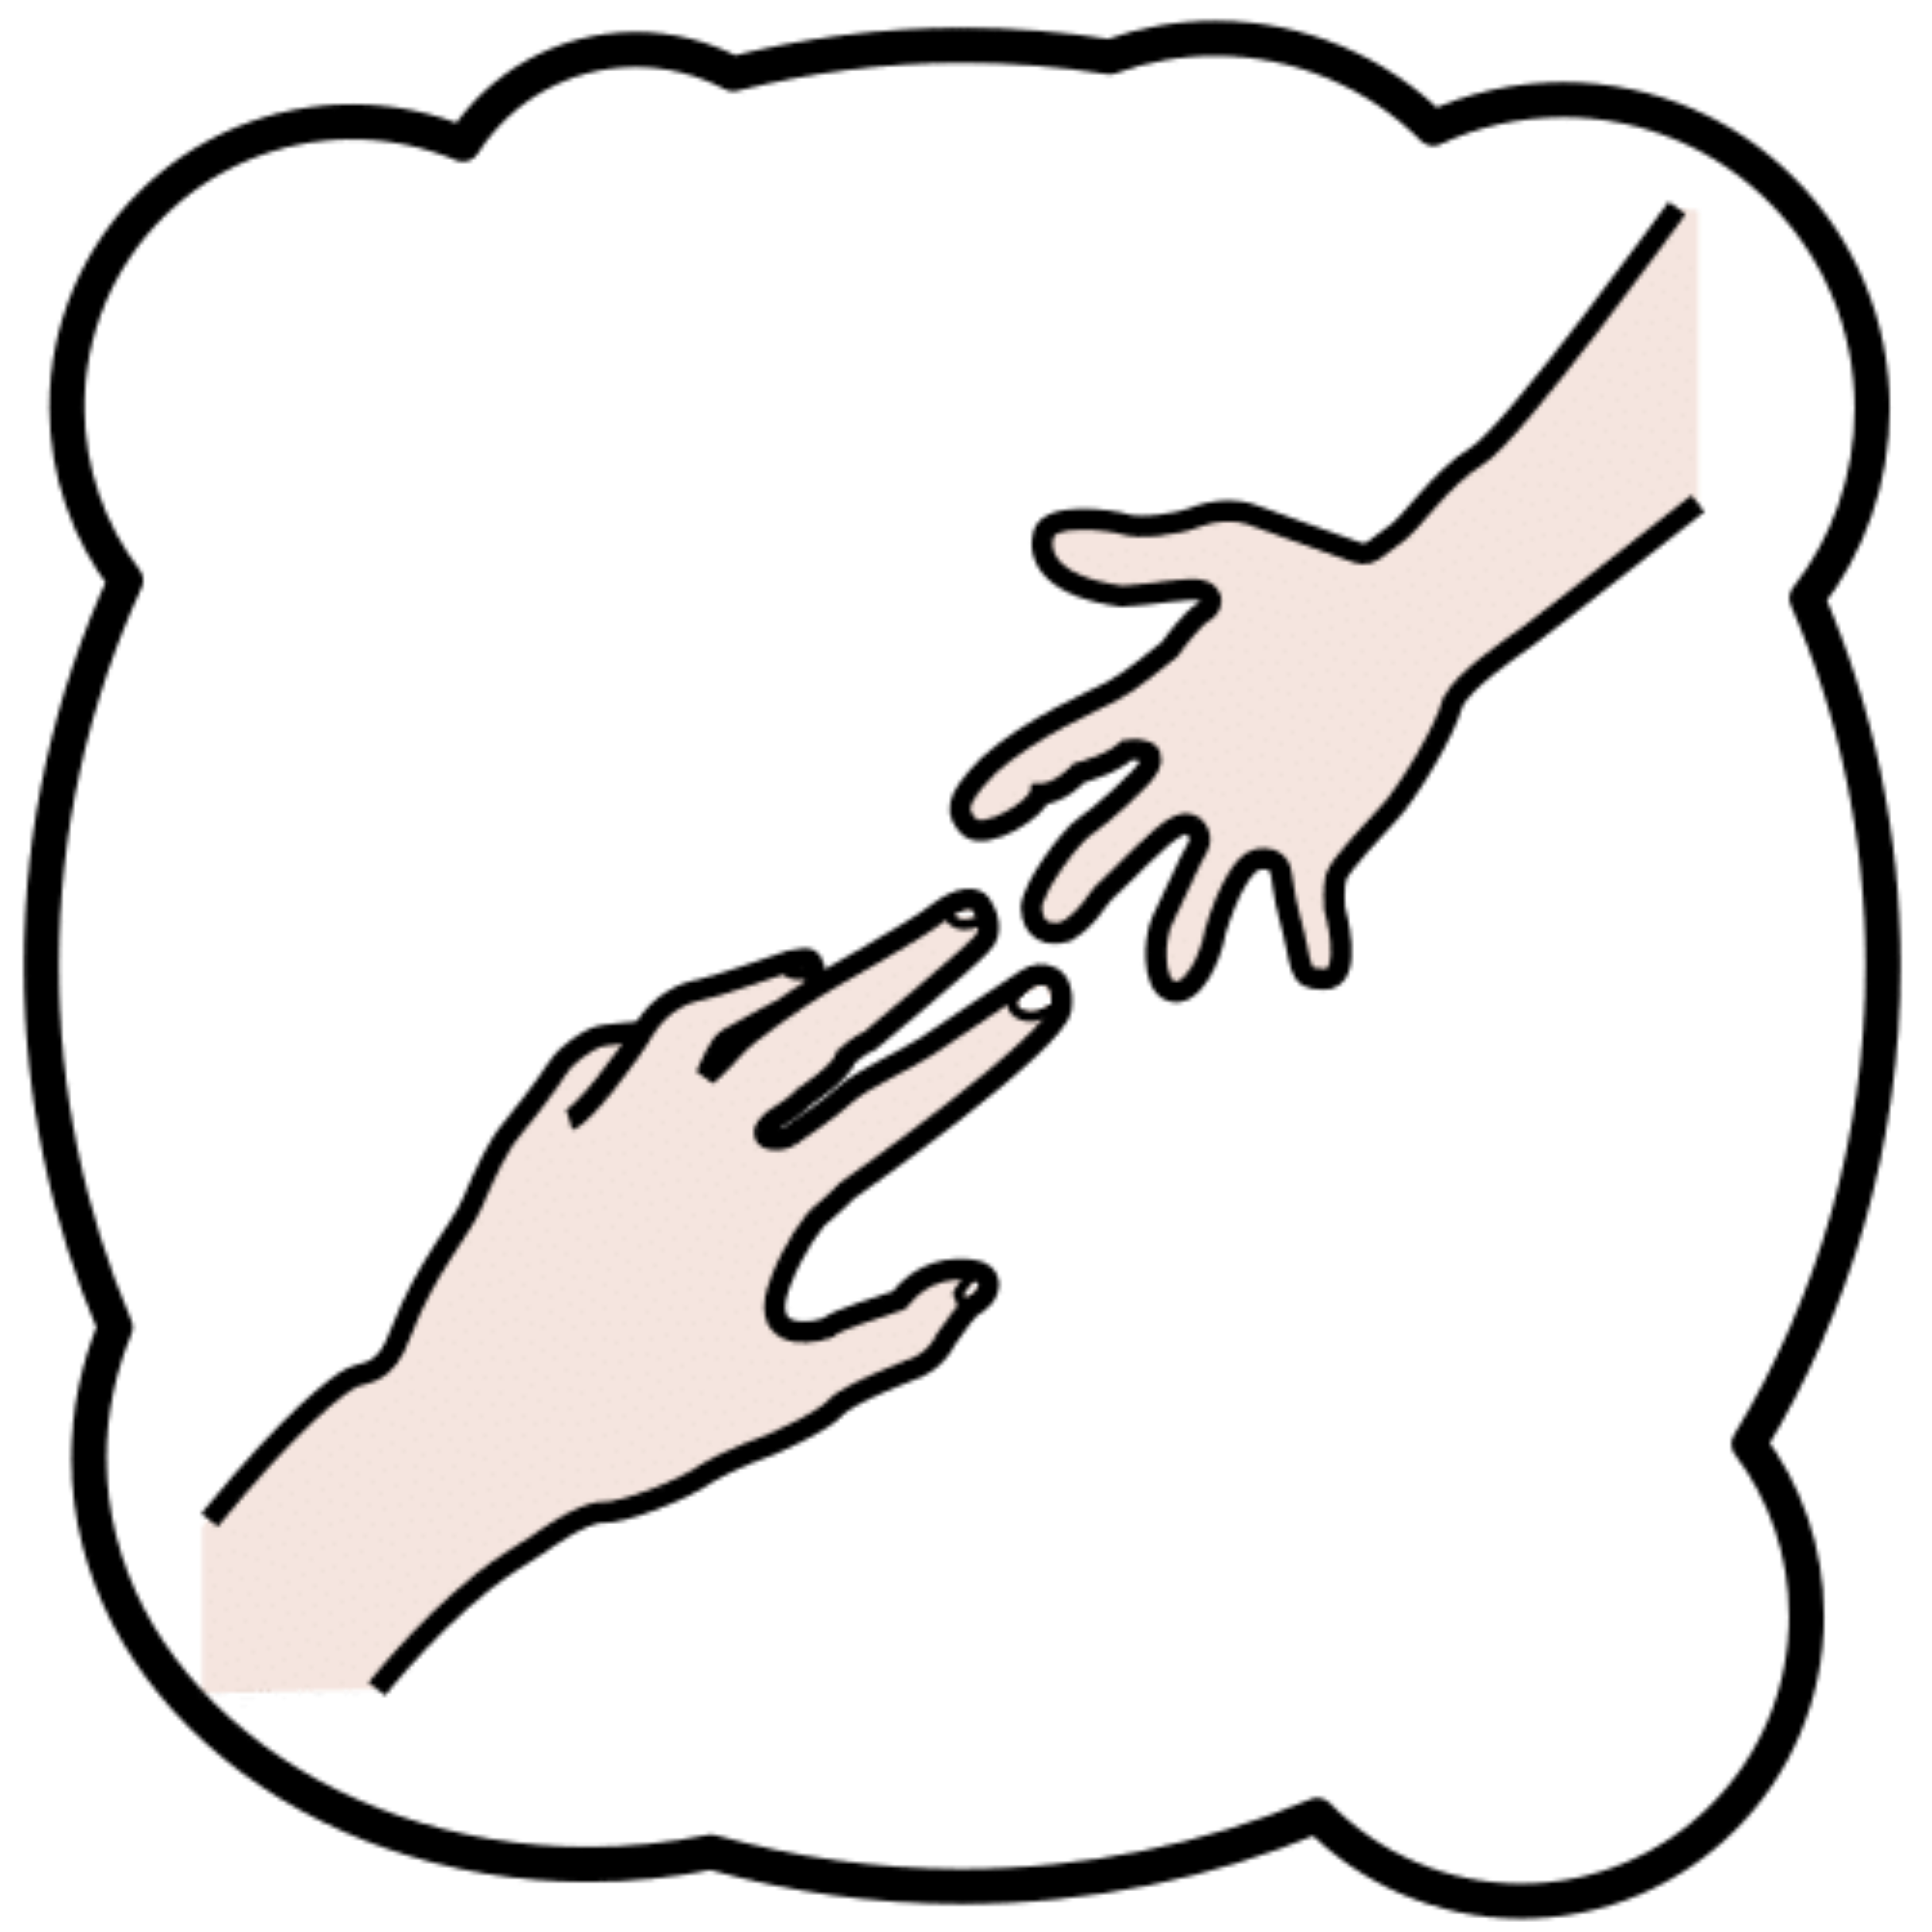 La imagen muestra dos manos a punto de encontrarse